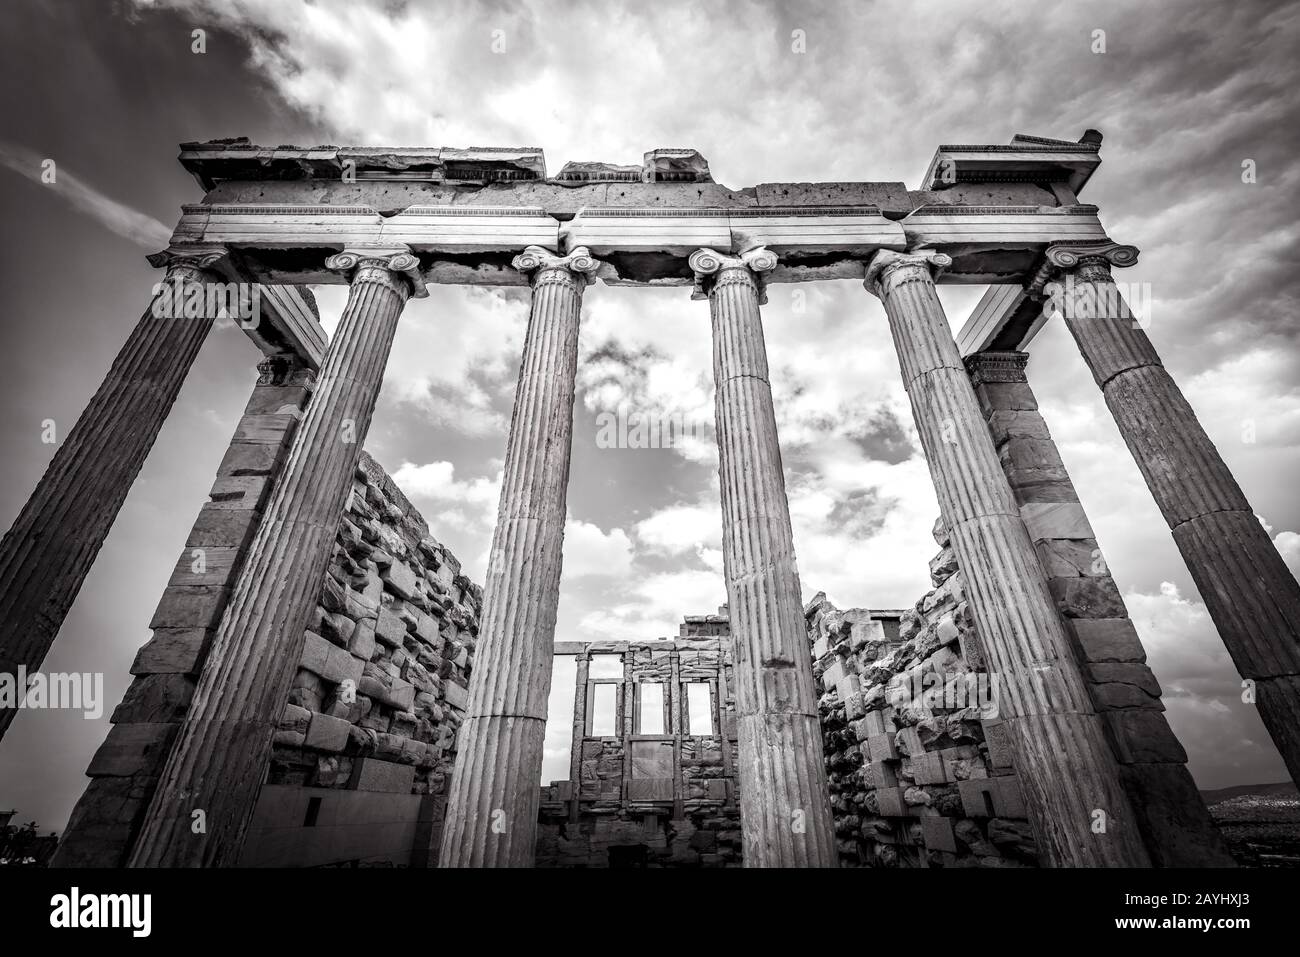 Erechtheion tempio sull'Acropoli, Atene, Grecia. E' uno dei principali punti di riferimento di Atene. Classica architettura greca antica nel centro di Atene. R Foto Stock